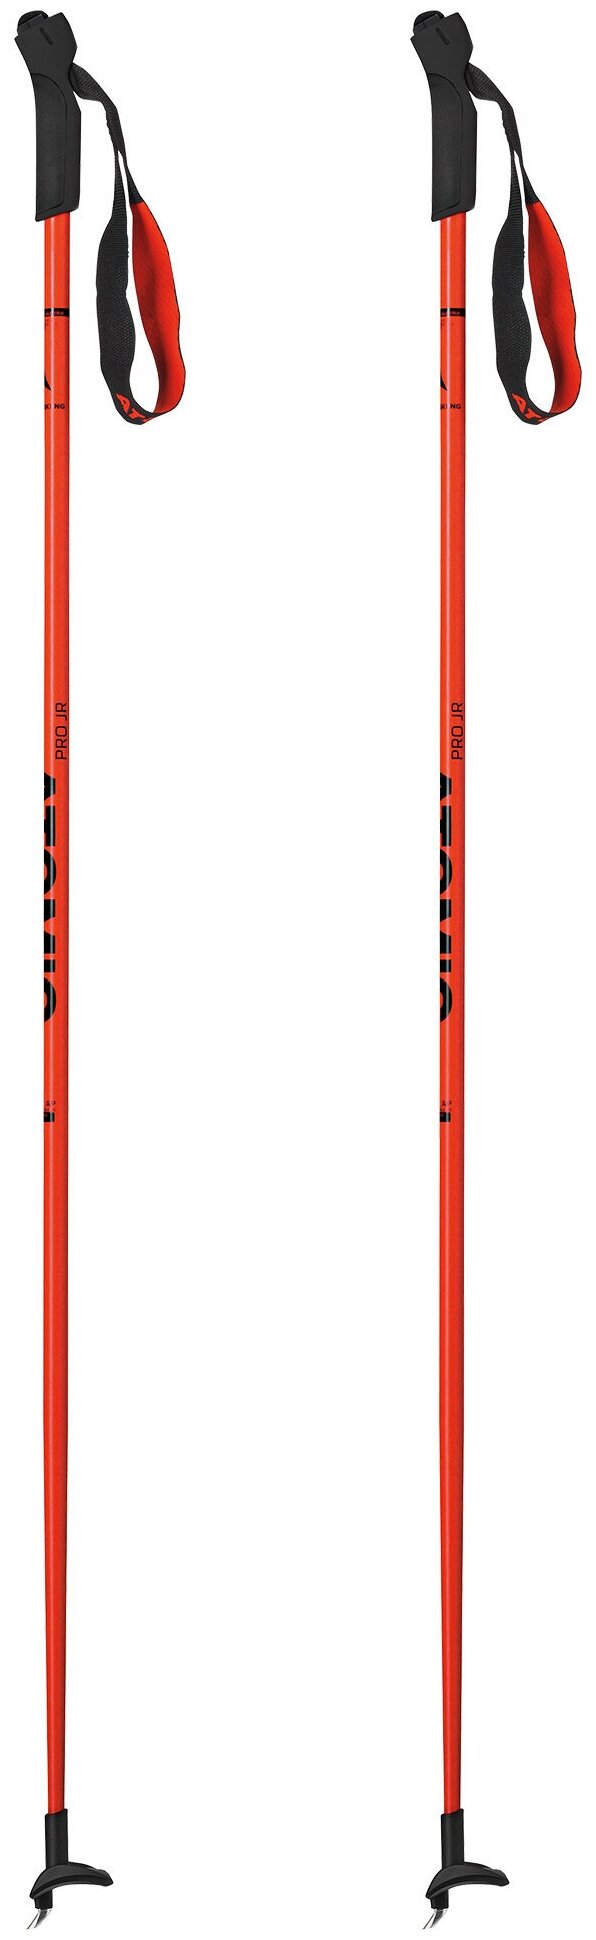 Лыжные палки ATOMIC Pro Jr, 100 см, red/black